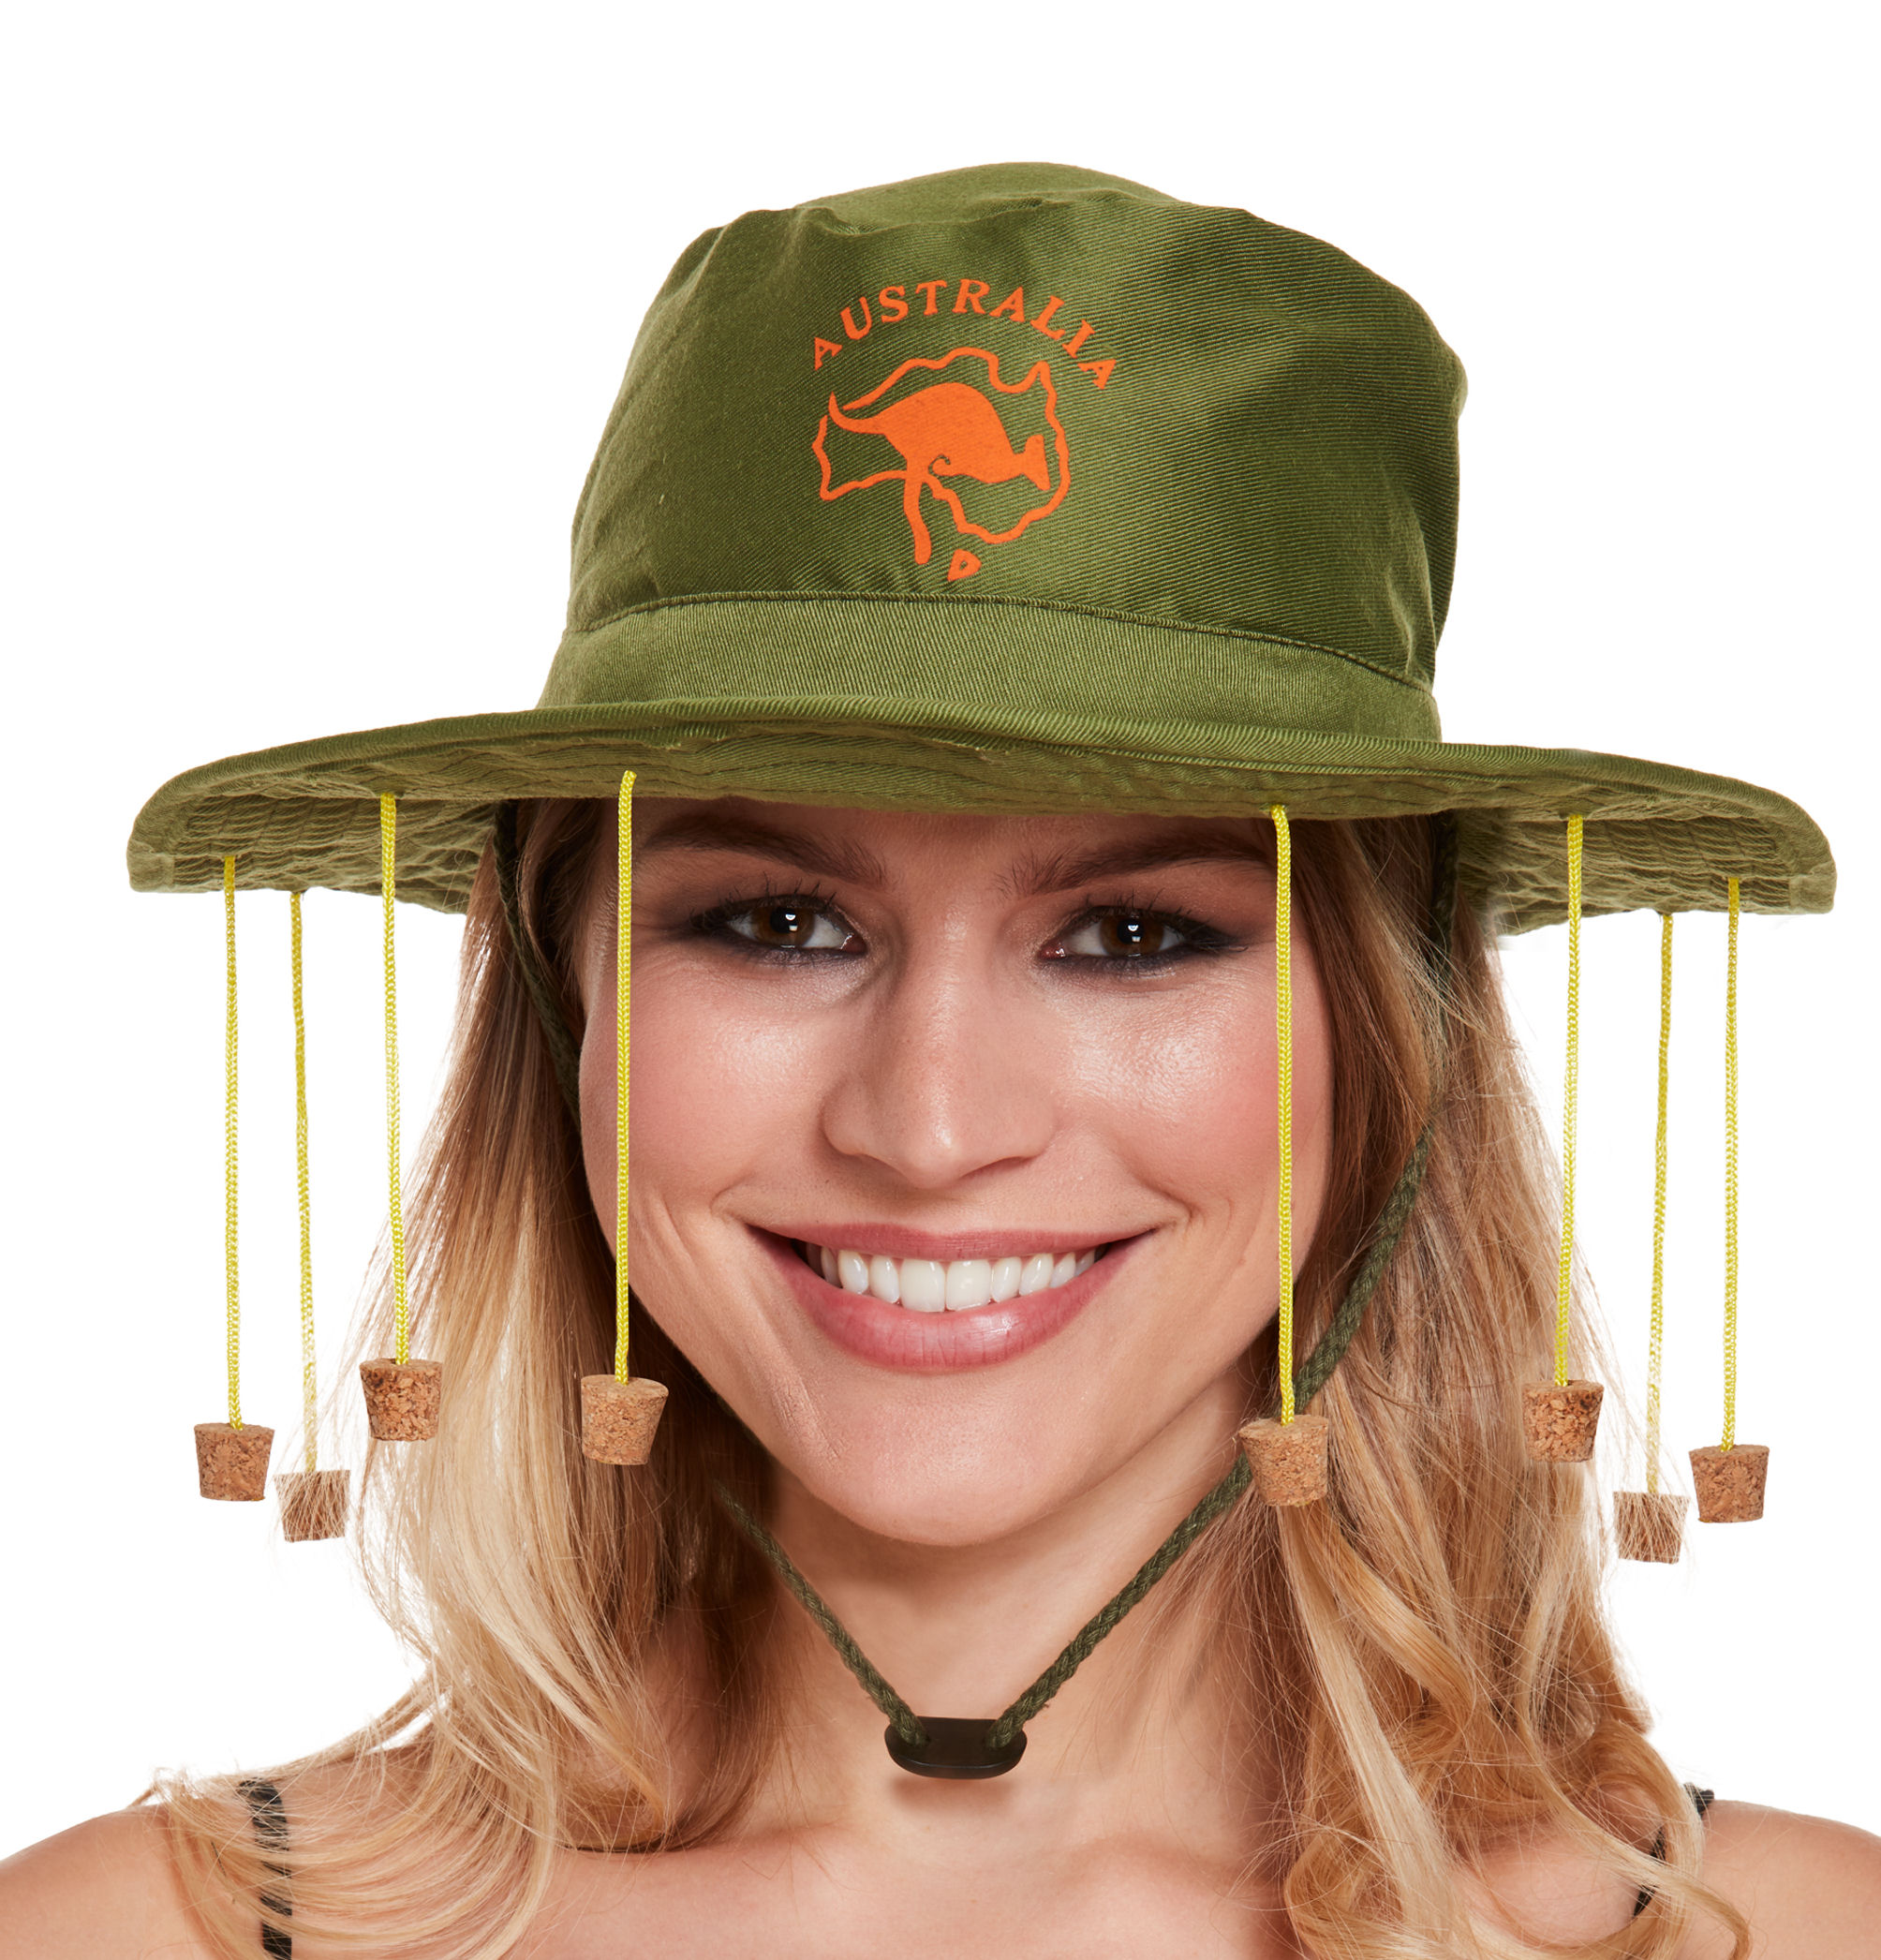 Australian Hat with Corks - Aussie Fancy Dress Cork hat Crocodile